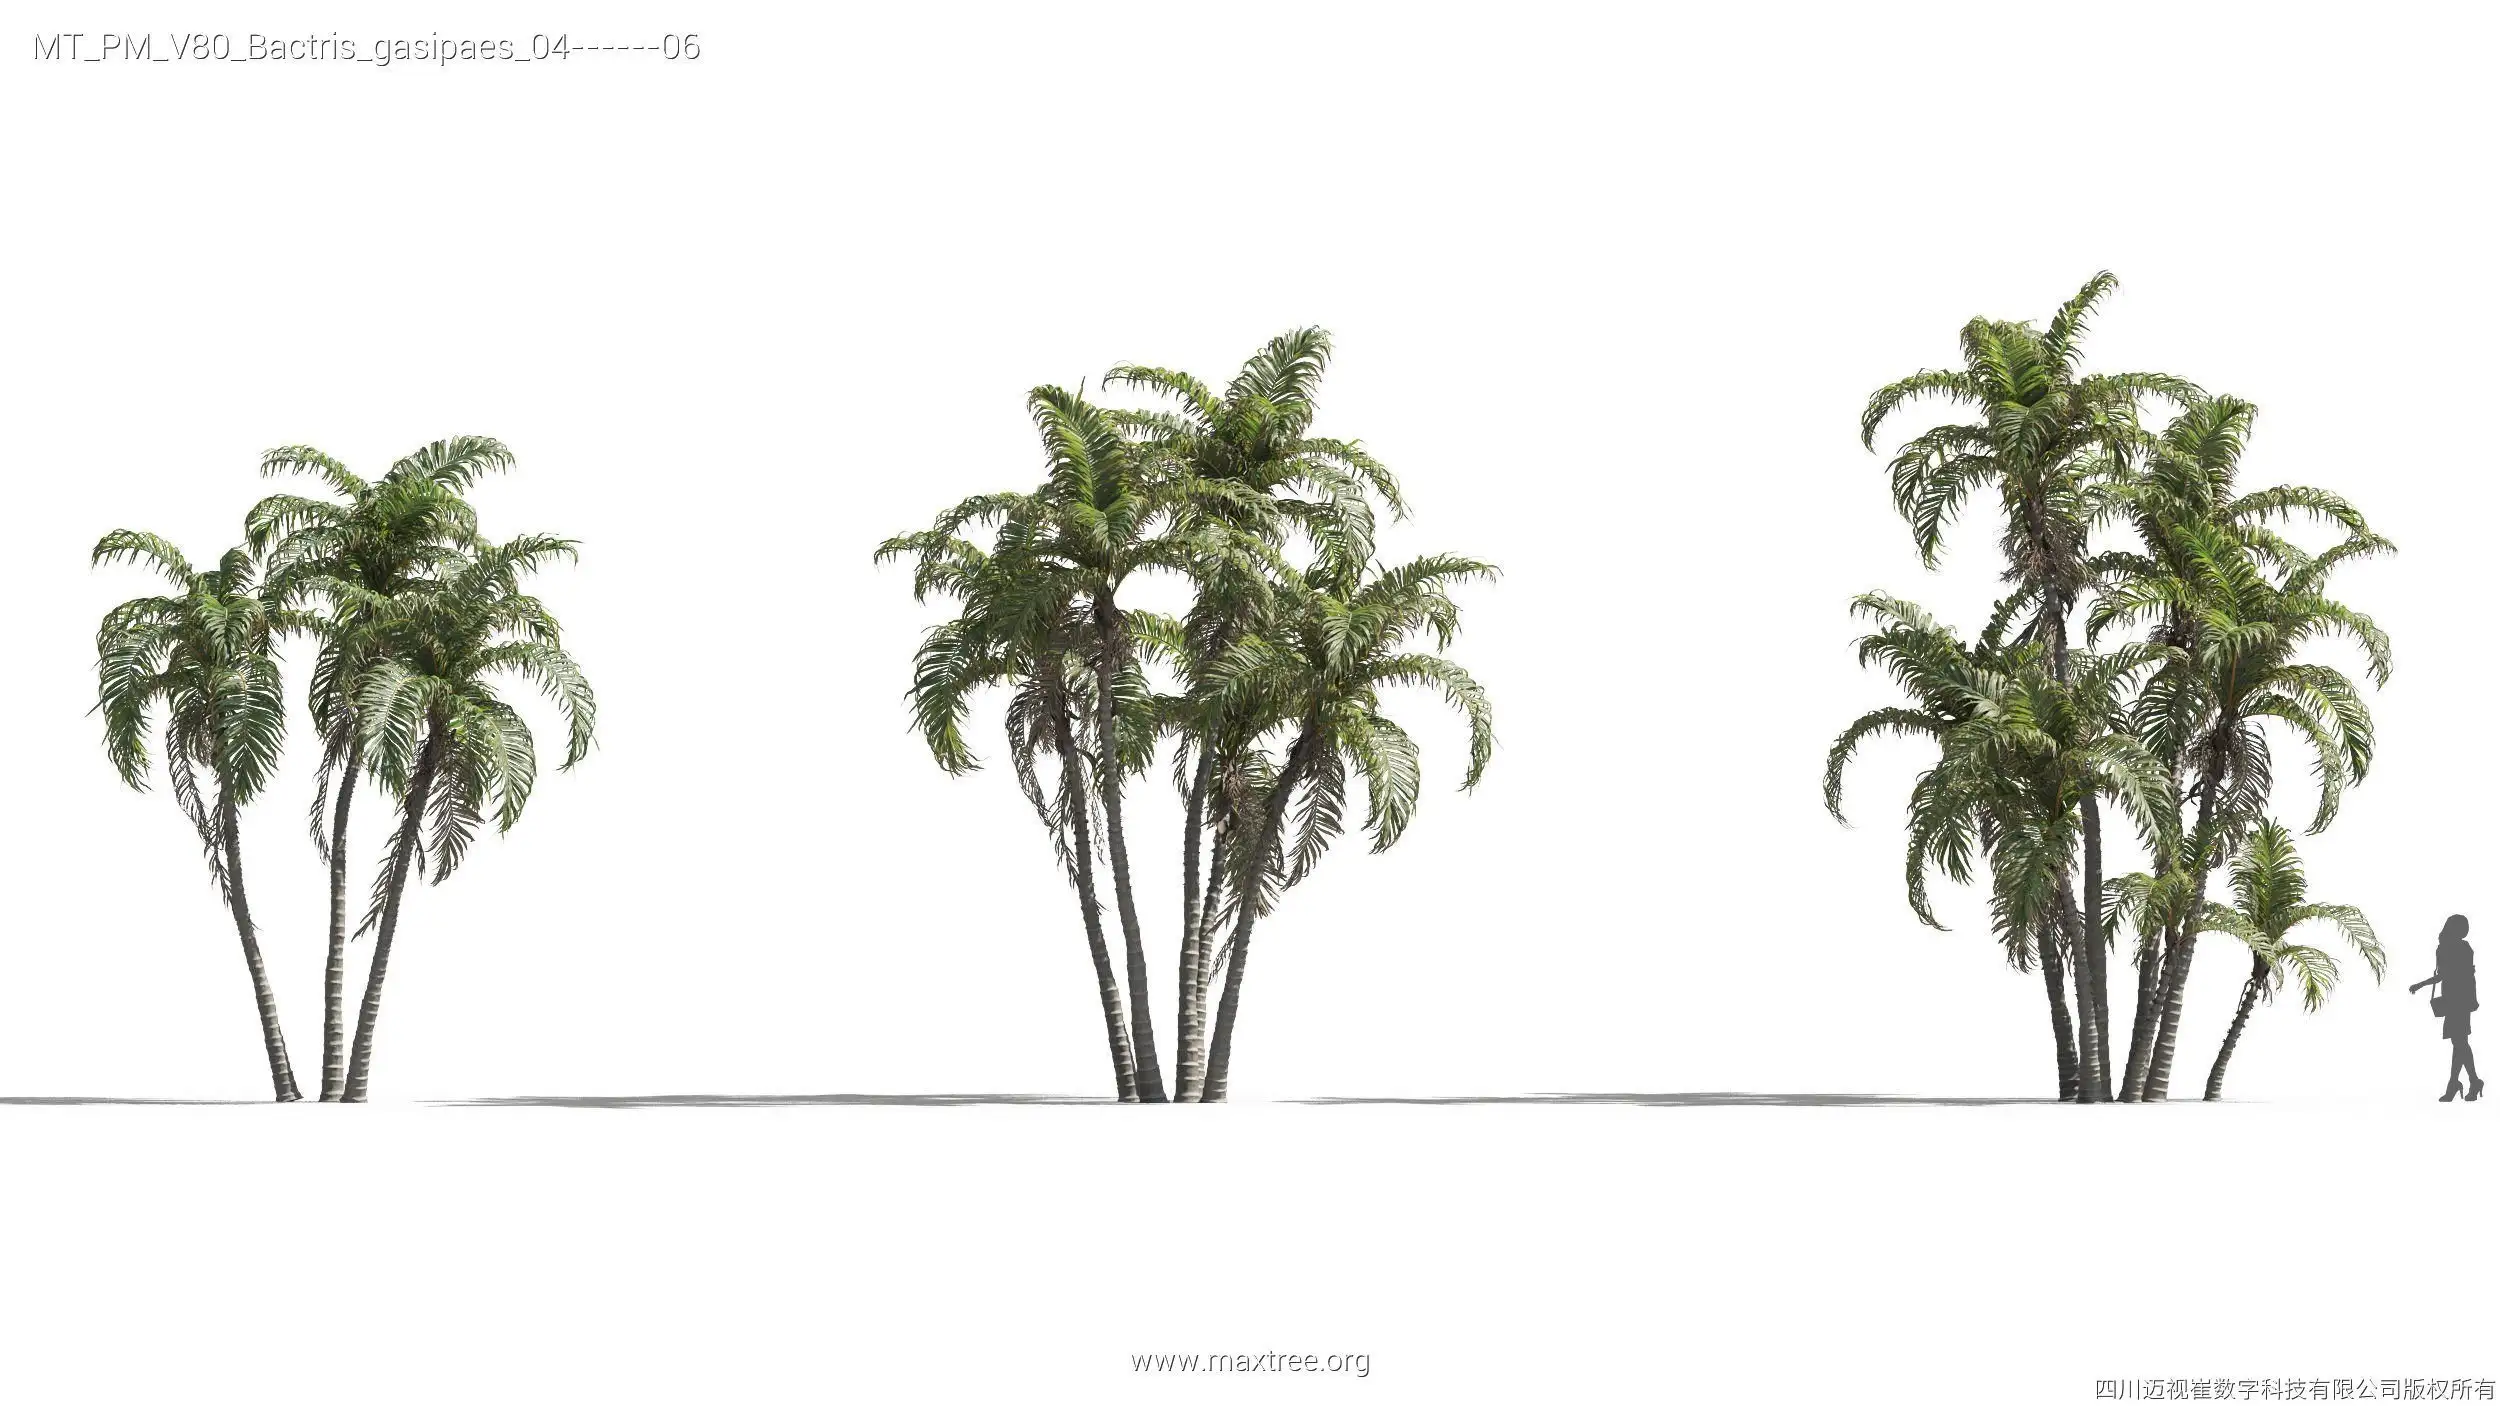 مدل سه بعدی گیاهان گرمسیری - 10